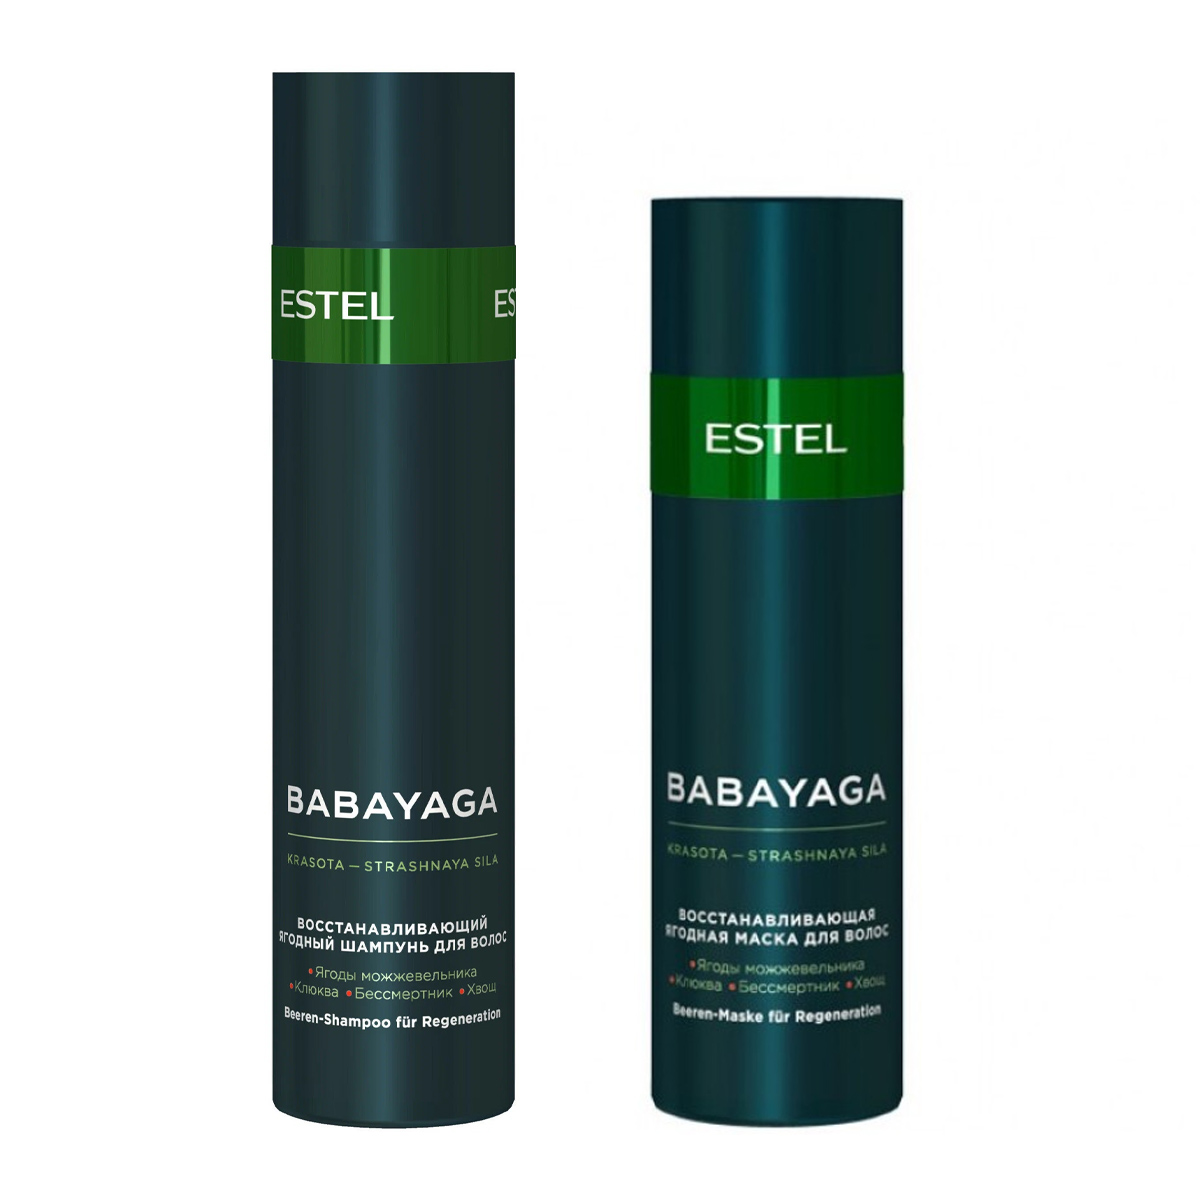 Estel Набор для восстановления волос: маска 200 мл + шампунь 250 мл (Estel, BabaYaga) estel набор для восстановления волос маска 200 мл шампунь 250 мл estel babayaga